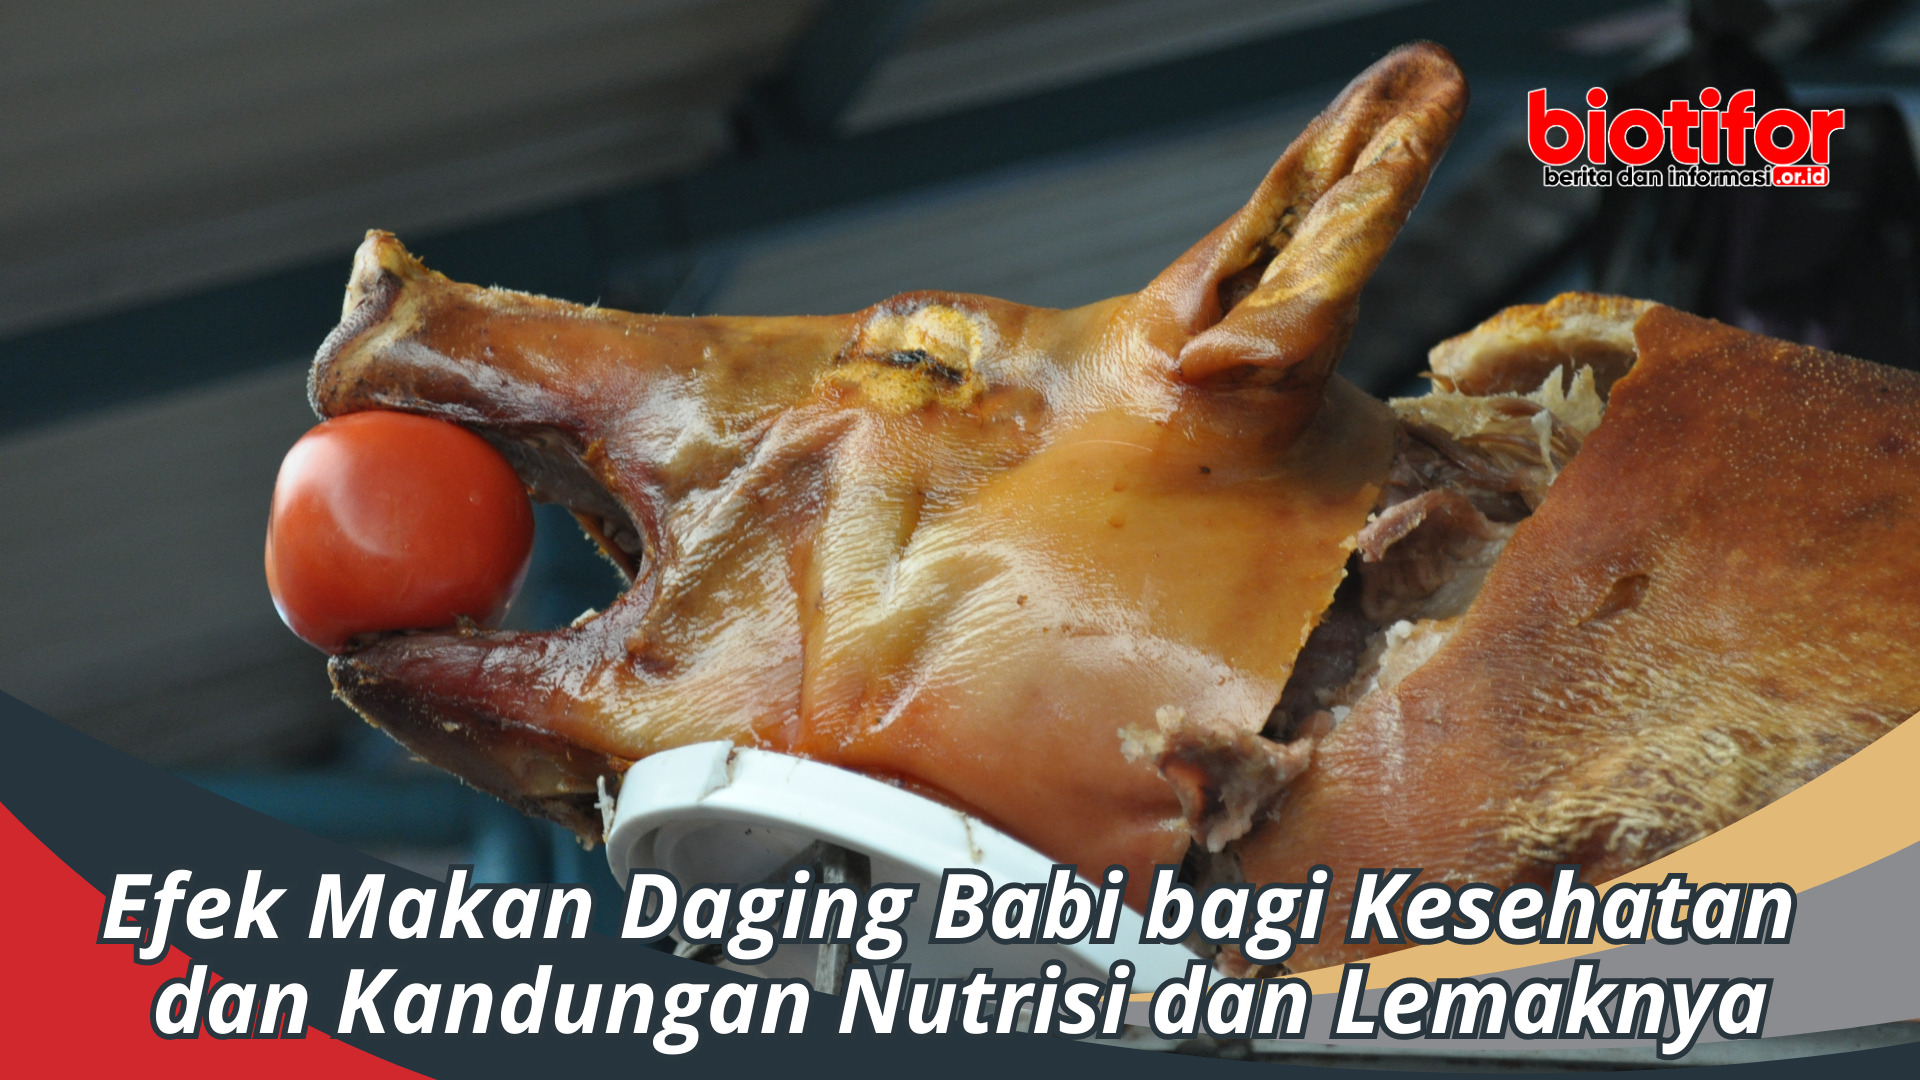 Efek Makan Daging Babi